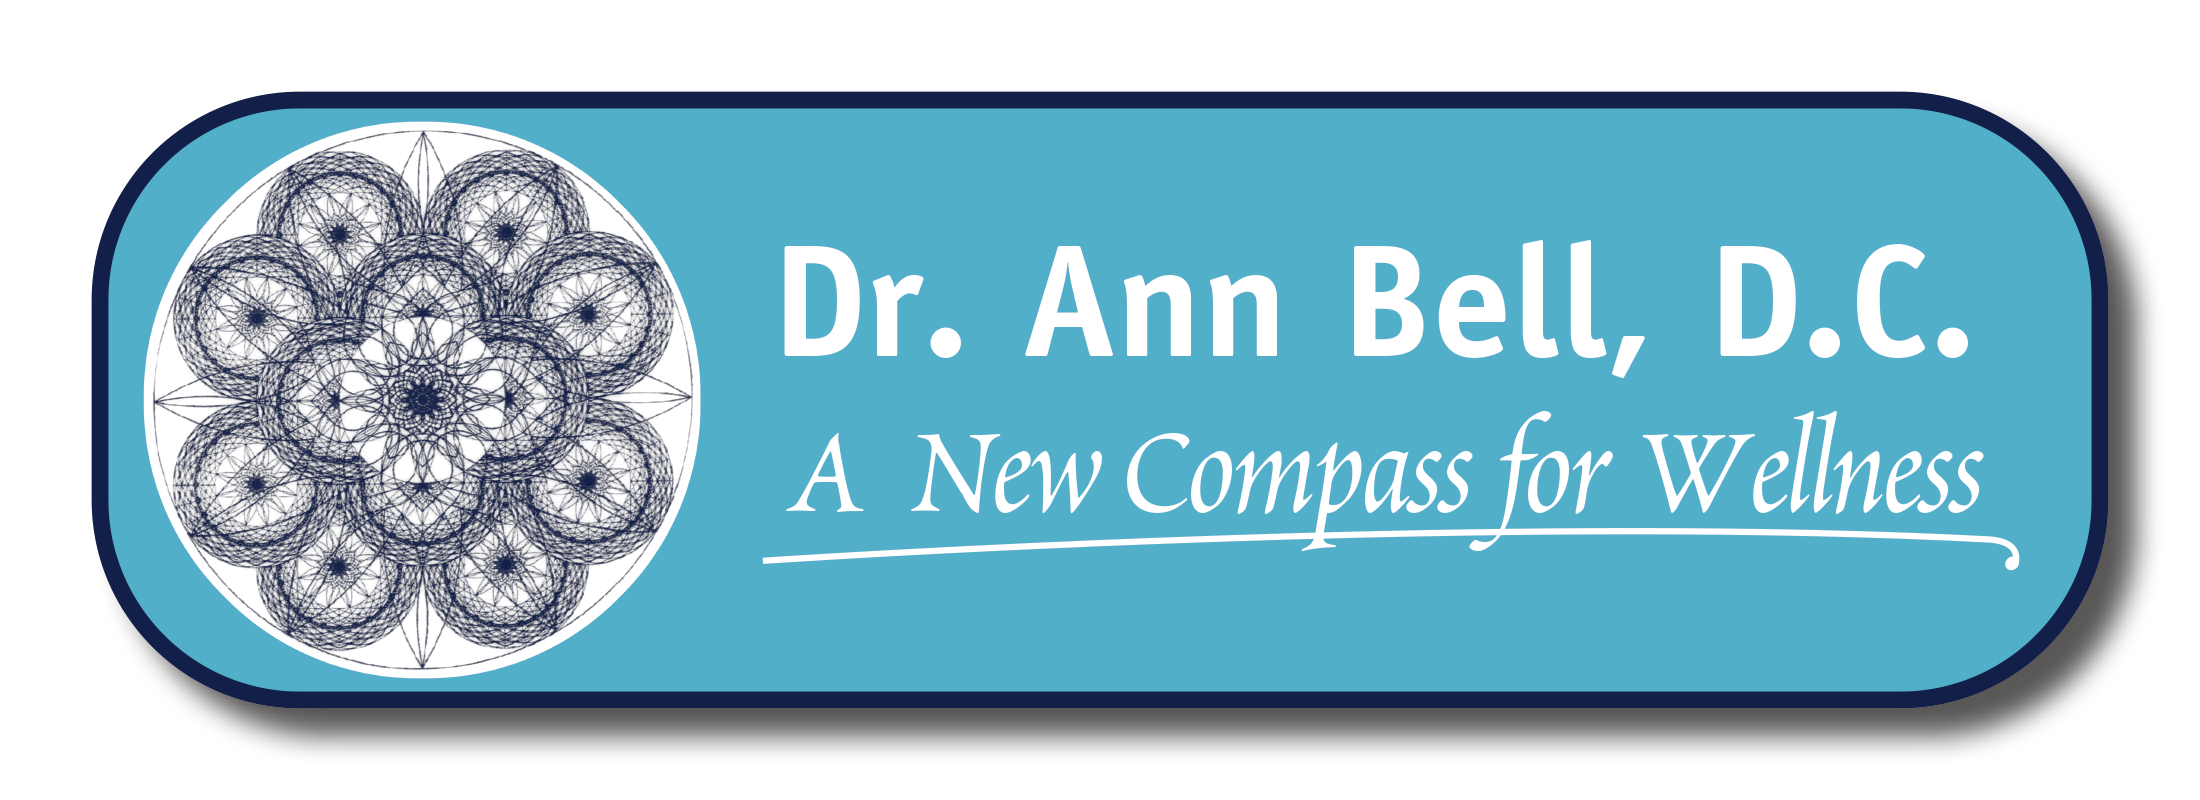 Dr. Ann Bell, D.C.